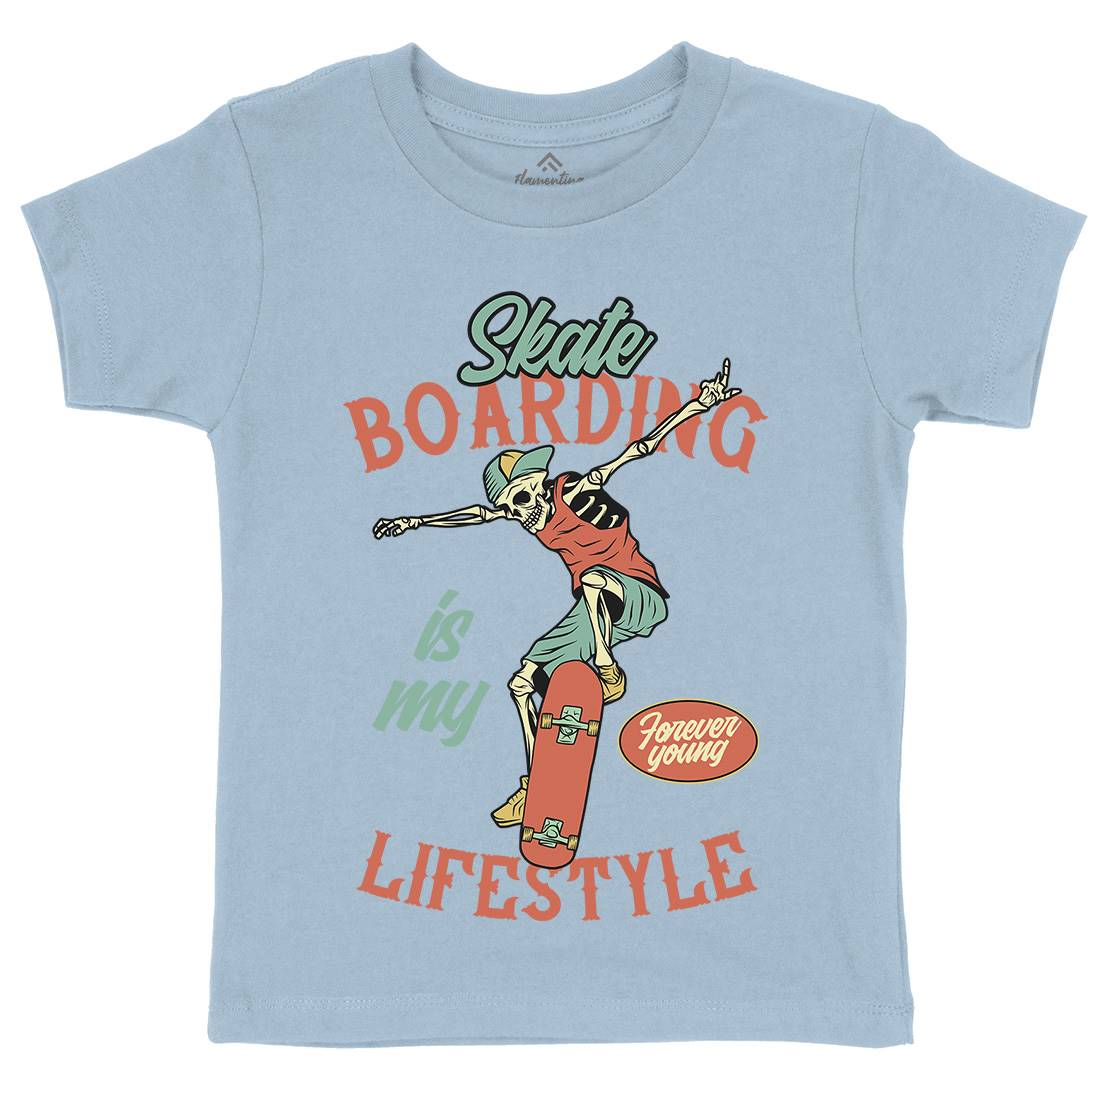 Skateboarding Lifestyle Kids Crew Neck T-Shirt Skate D976